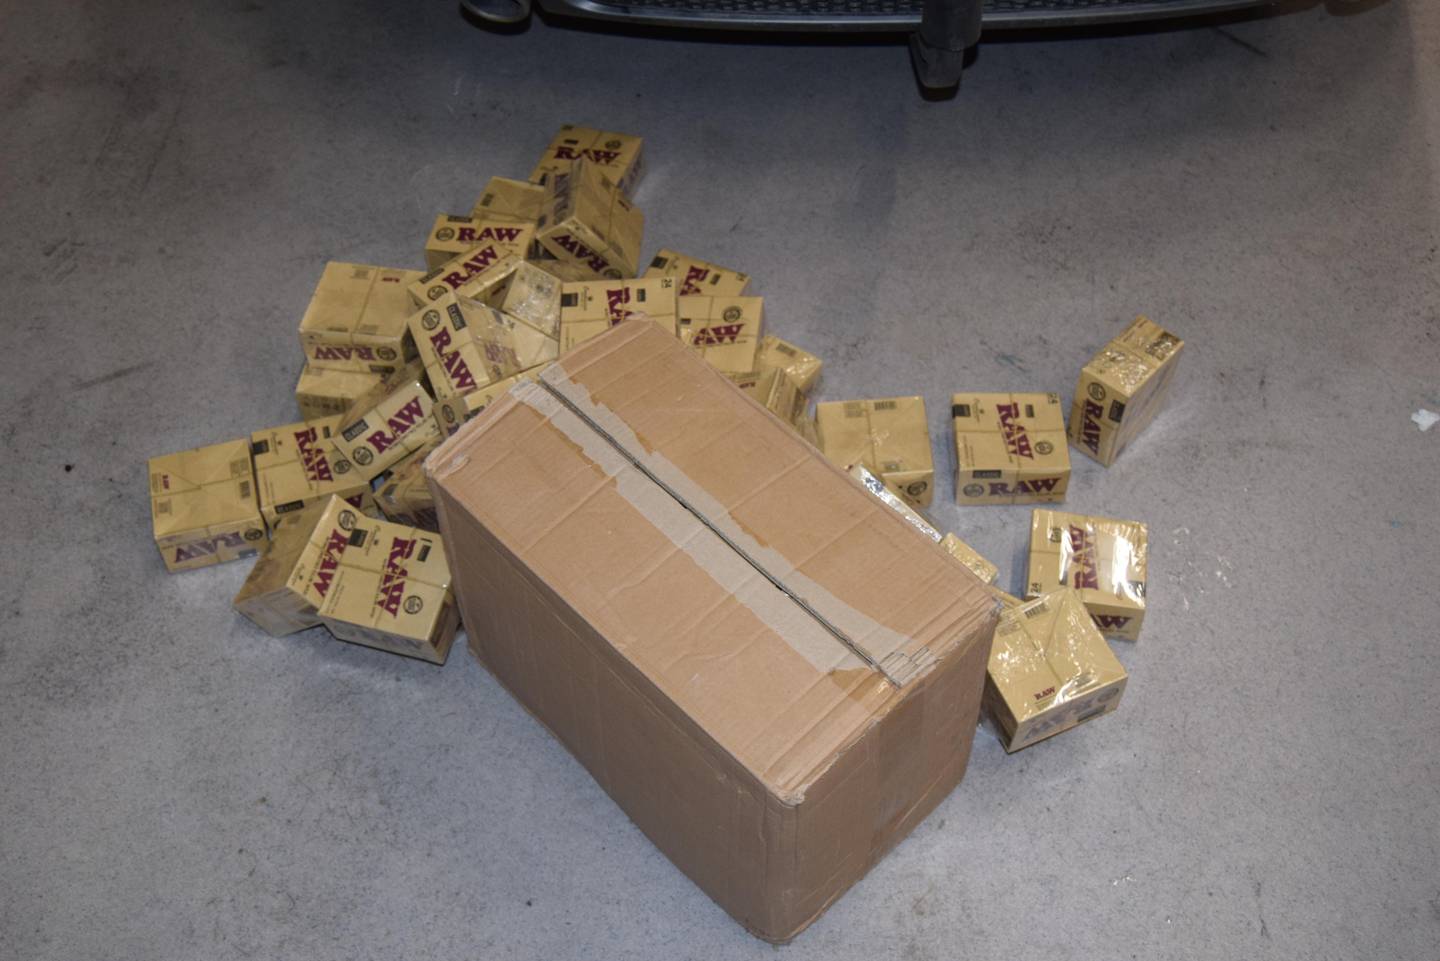 De drøyt 60.000 sigarettpapirene var forsøkt skjult i en hjulbrønn i bilens bagasjerom.